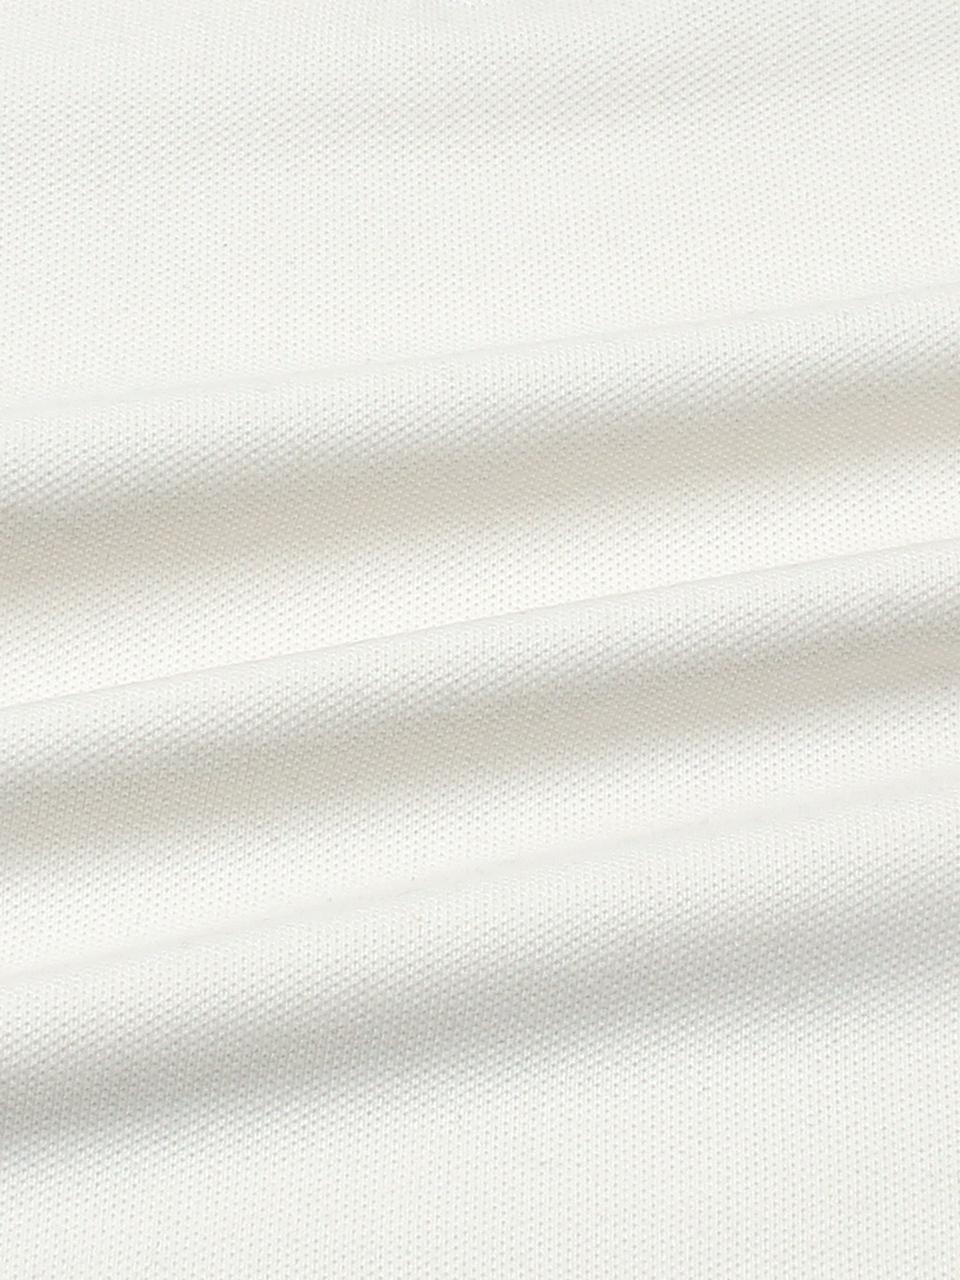 GRDNO Premium Napoleon Small Cow Boy Polo Shirt (Off-White)